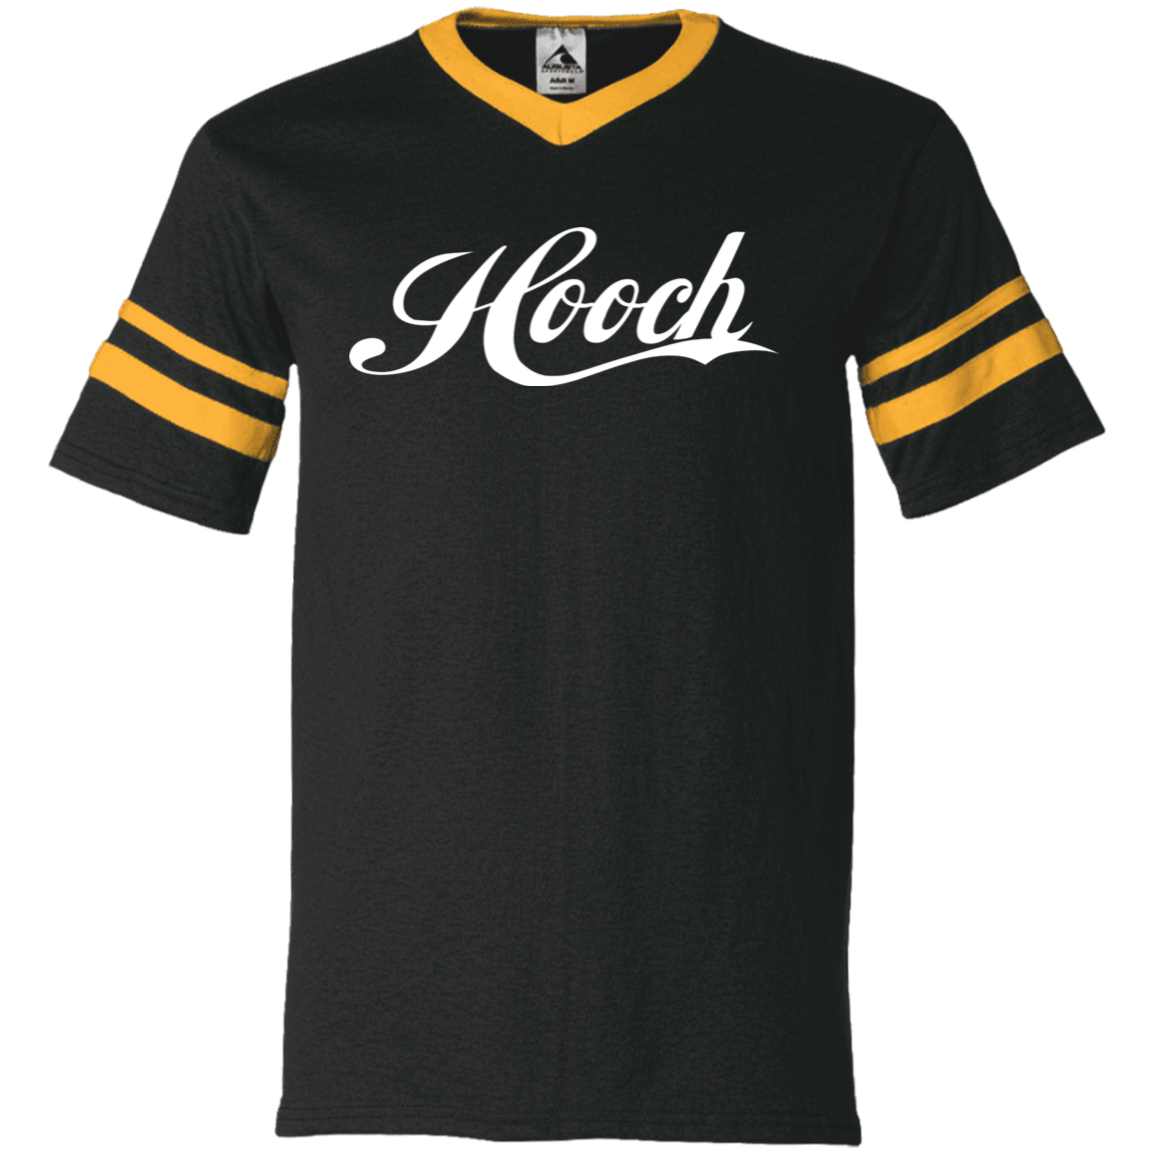 Hooch V-Neck Baseball T-shirt